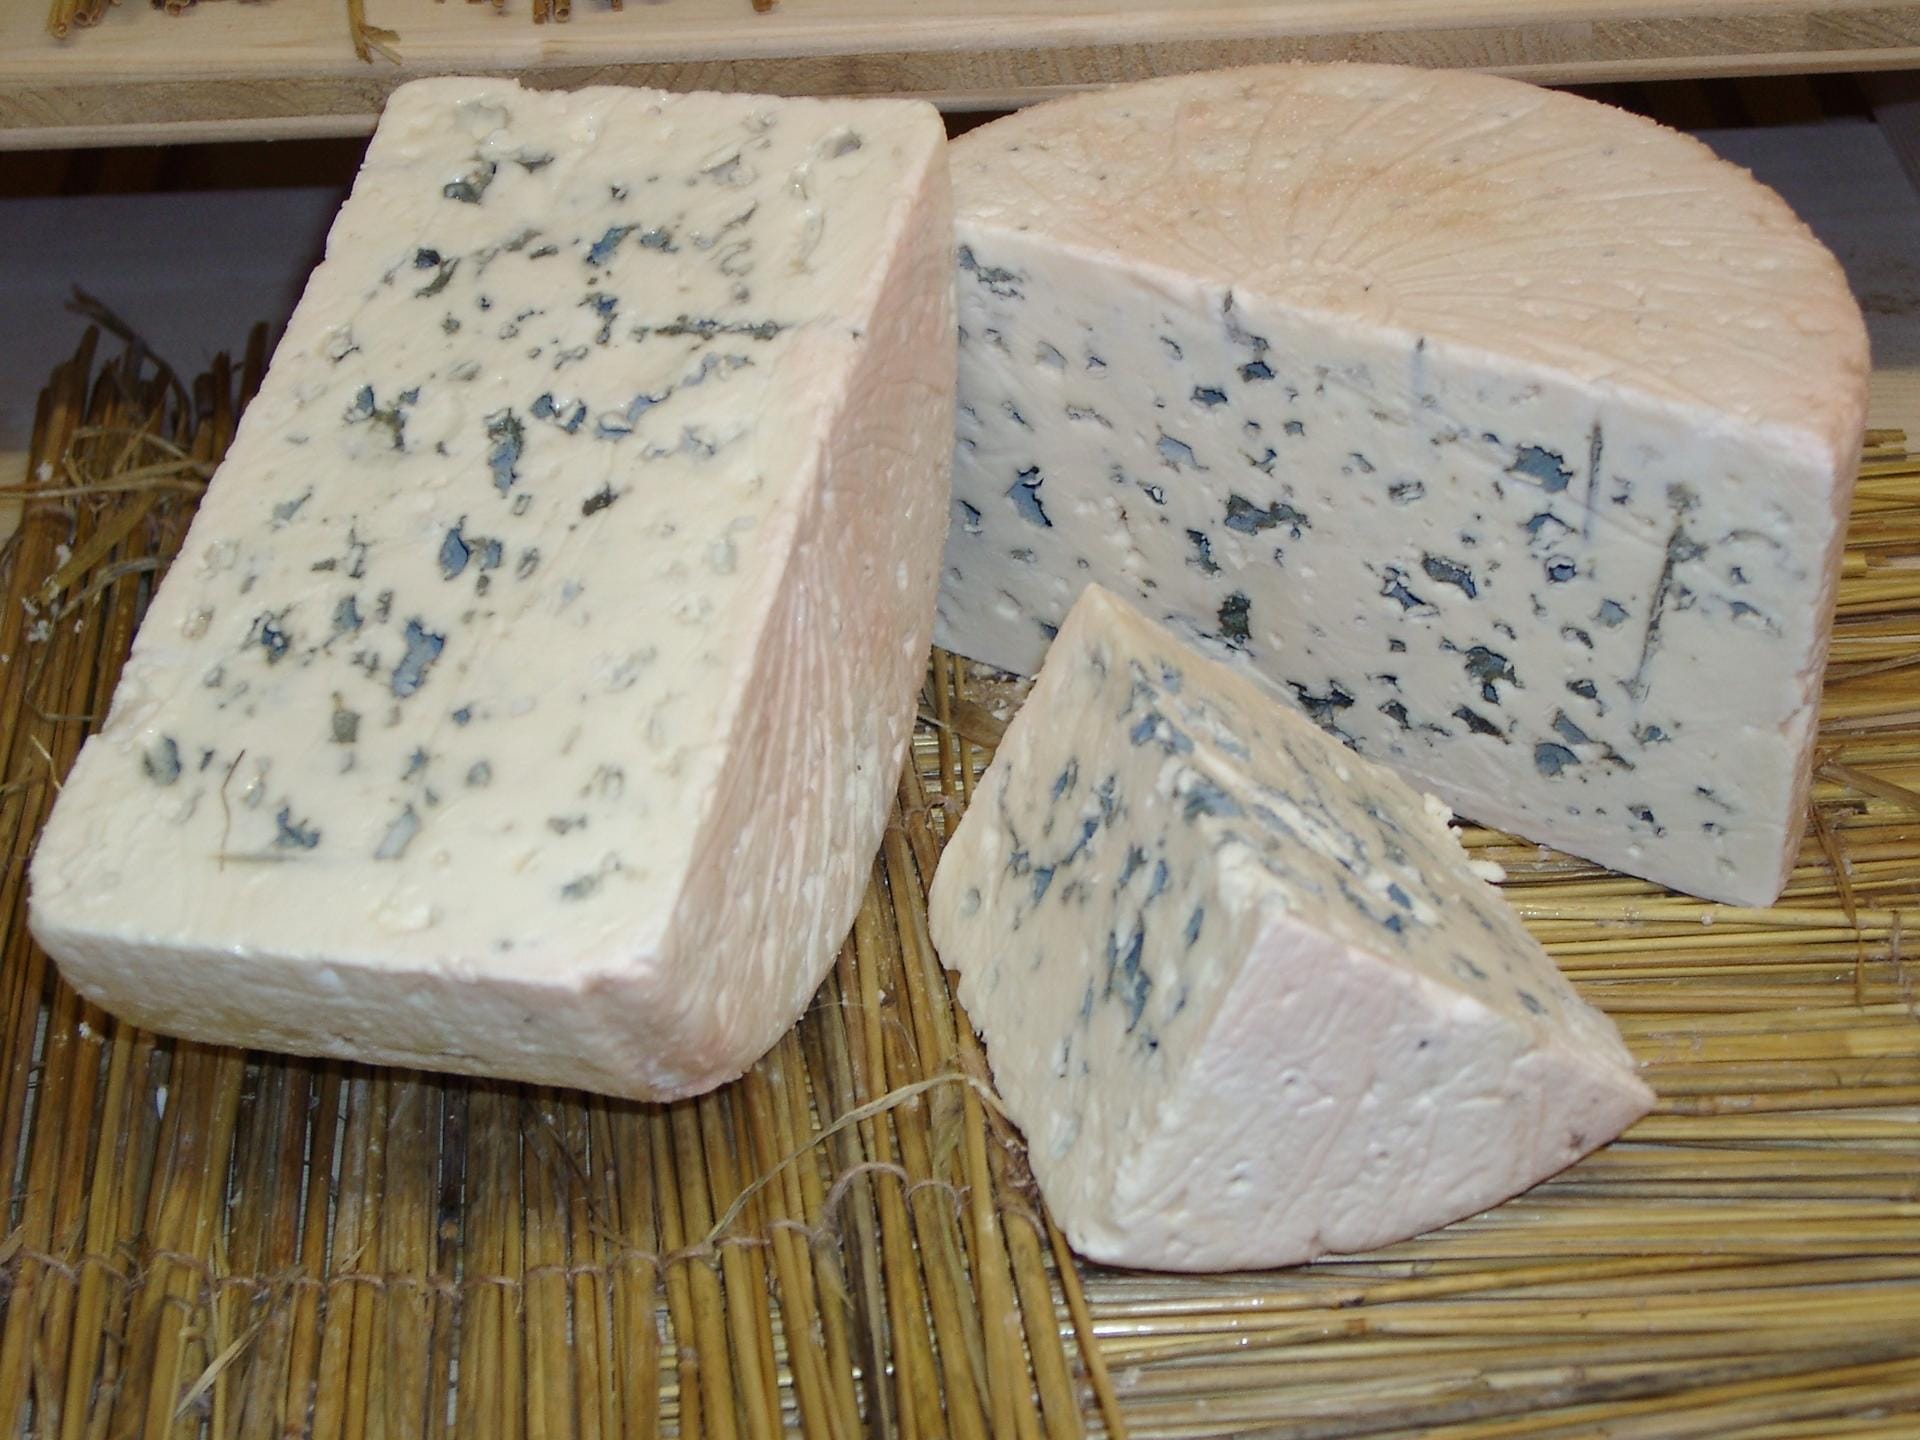 Die Bezeichnung Blauschimmelkäse wird beim Roquefort ernst genommen. Traditionell wurden Roggenbrote zum Schimmeln ausgelegt. Der Schimmelflaum wurde anschließend getrocknet und dem Käse zugegeben. Heute wird er oft mit Schimmelsporen "geimpft".